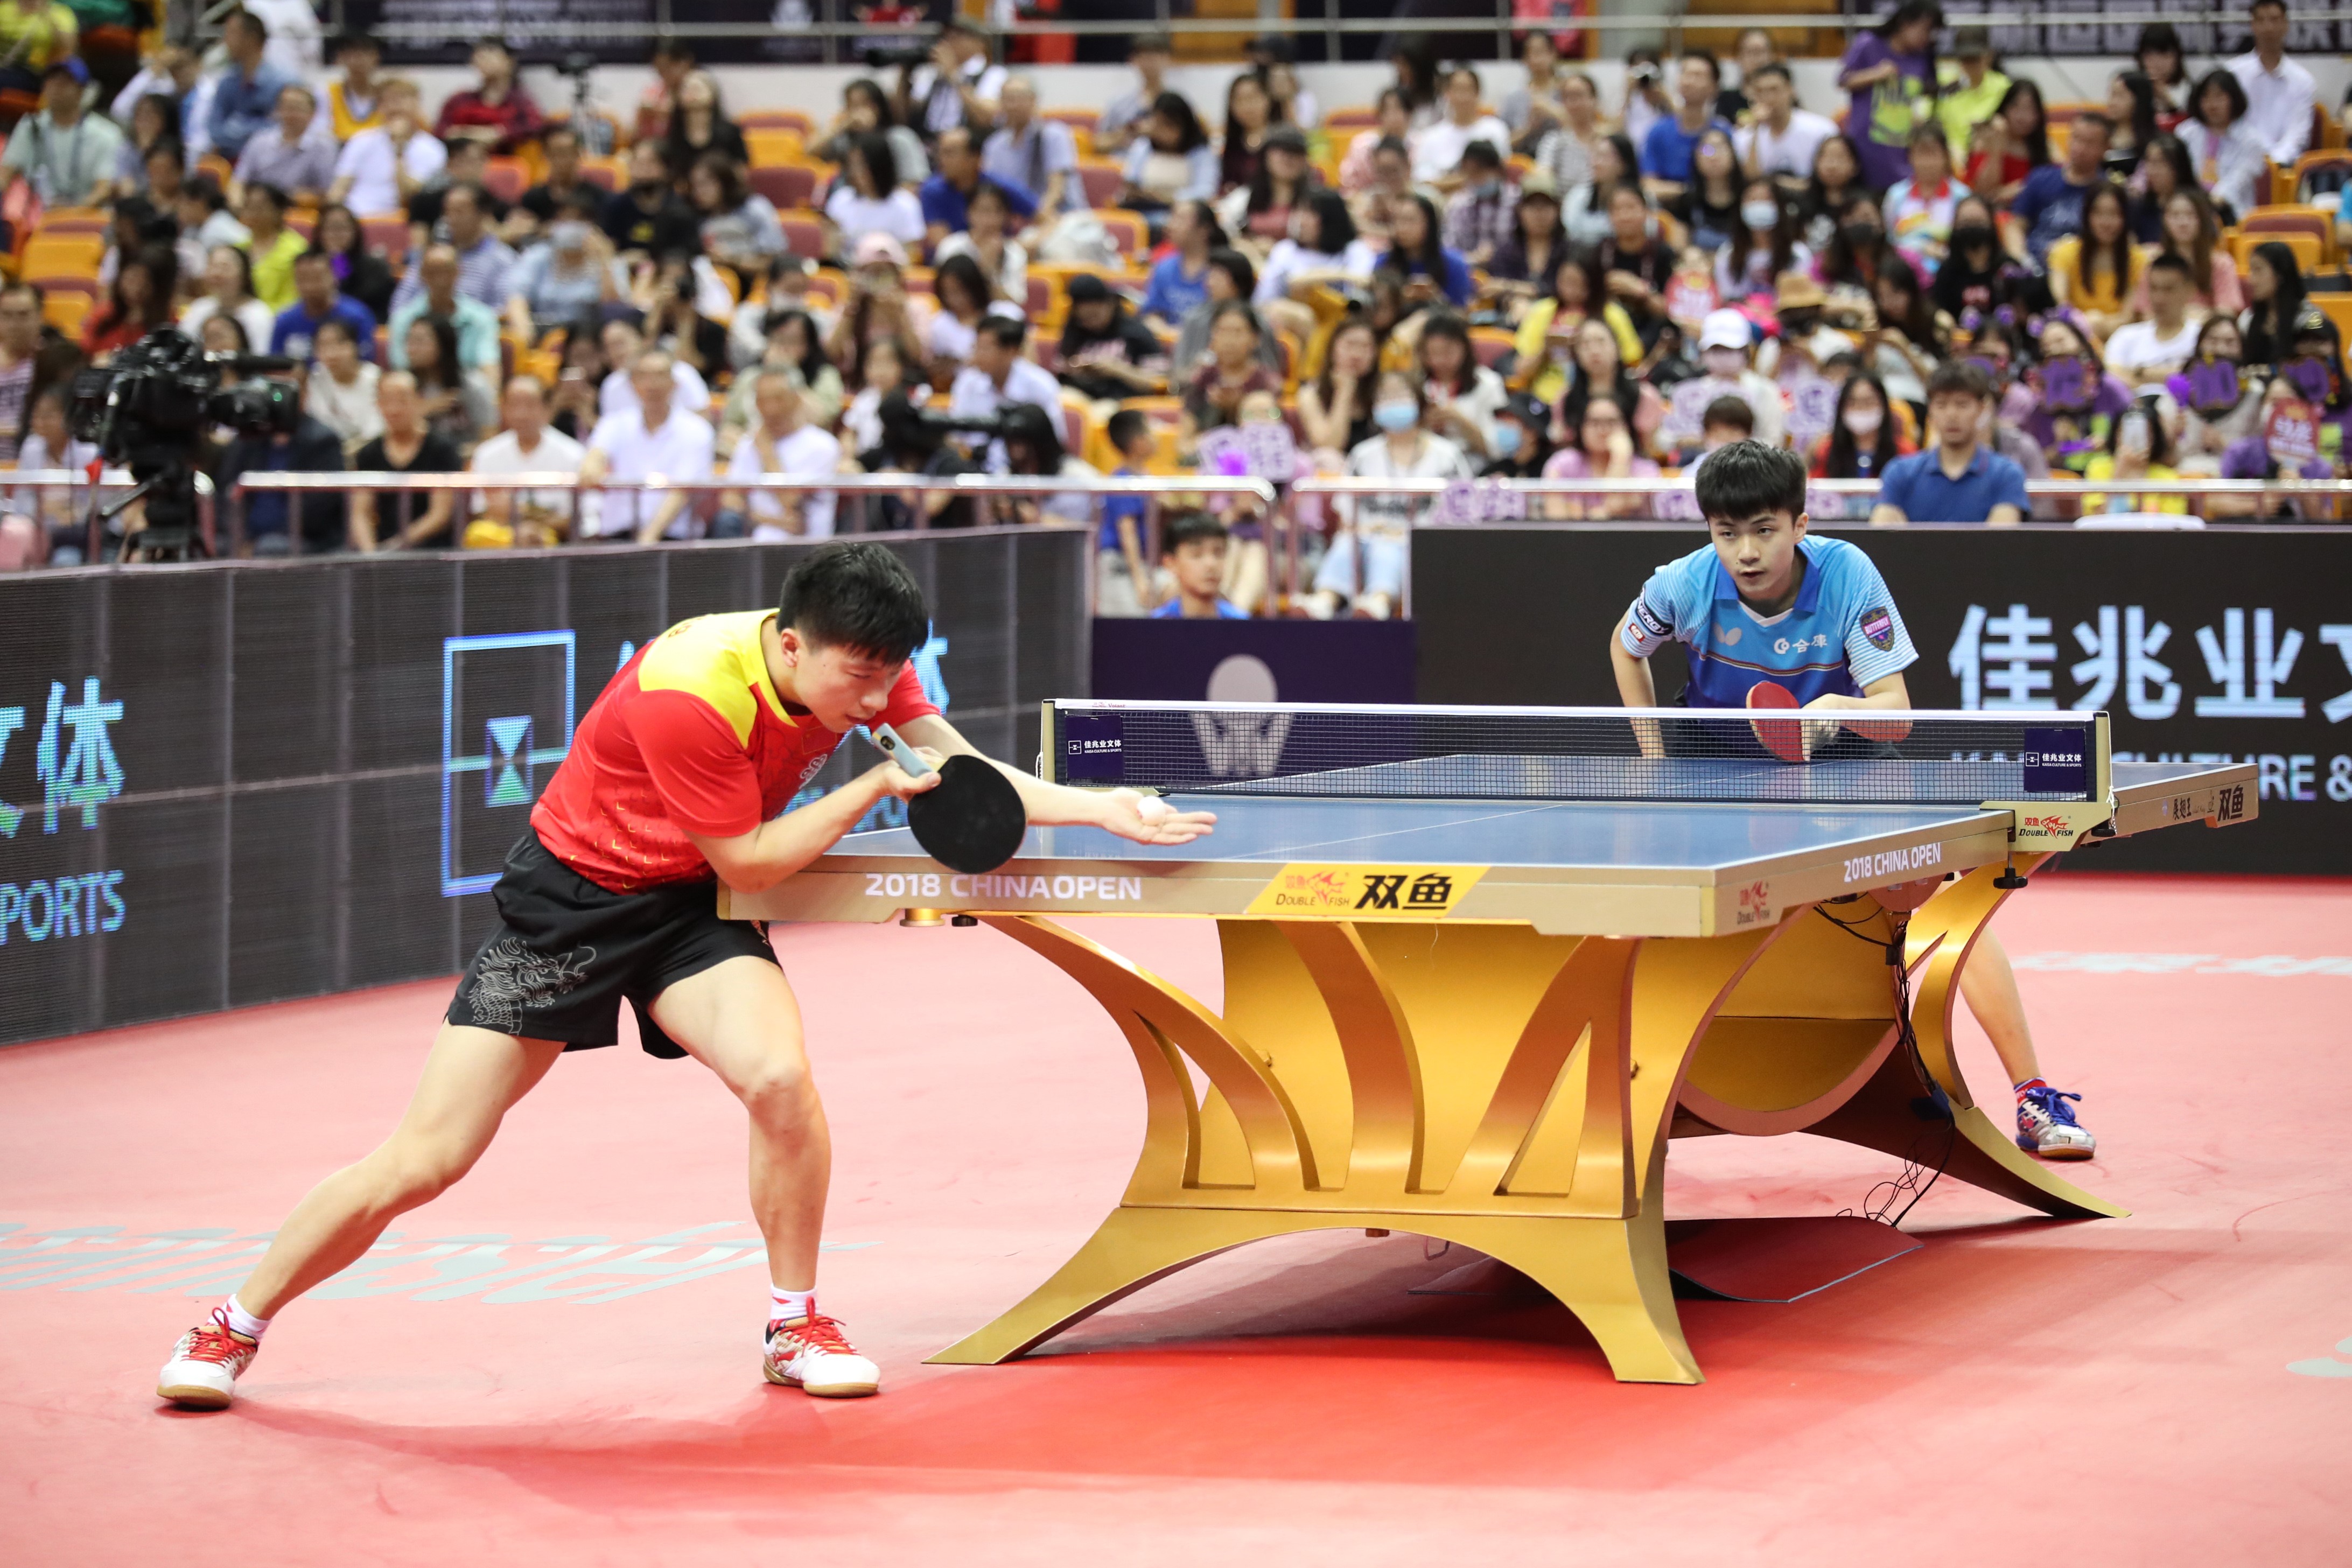 2018年中國乒乓球公開賽比賽現場(受訪者供圖)